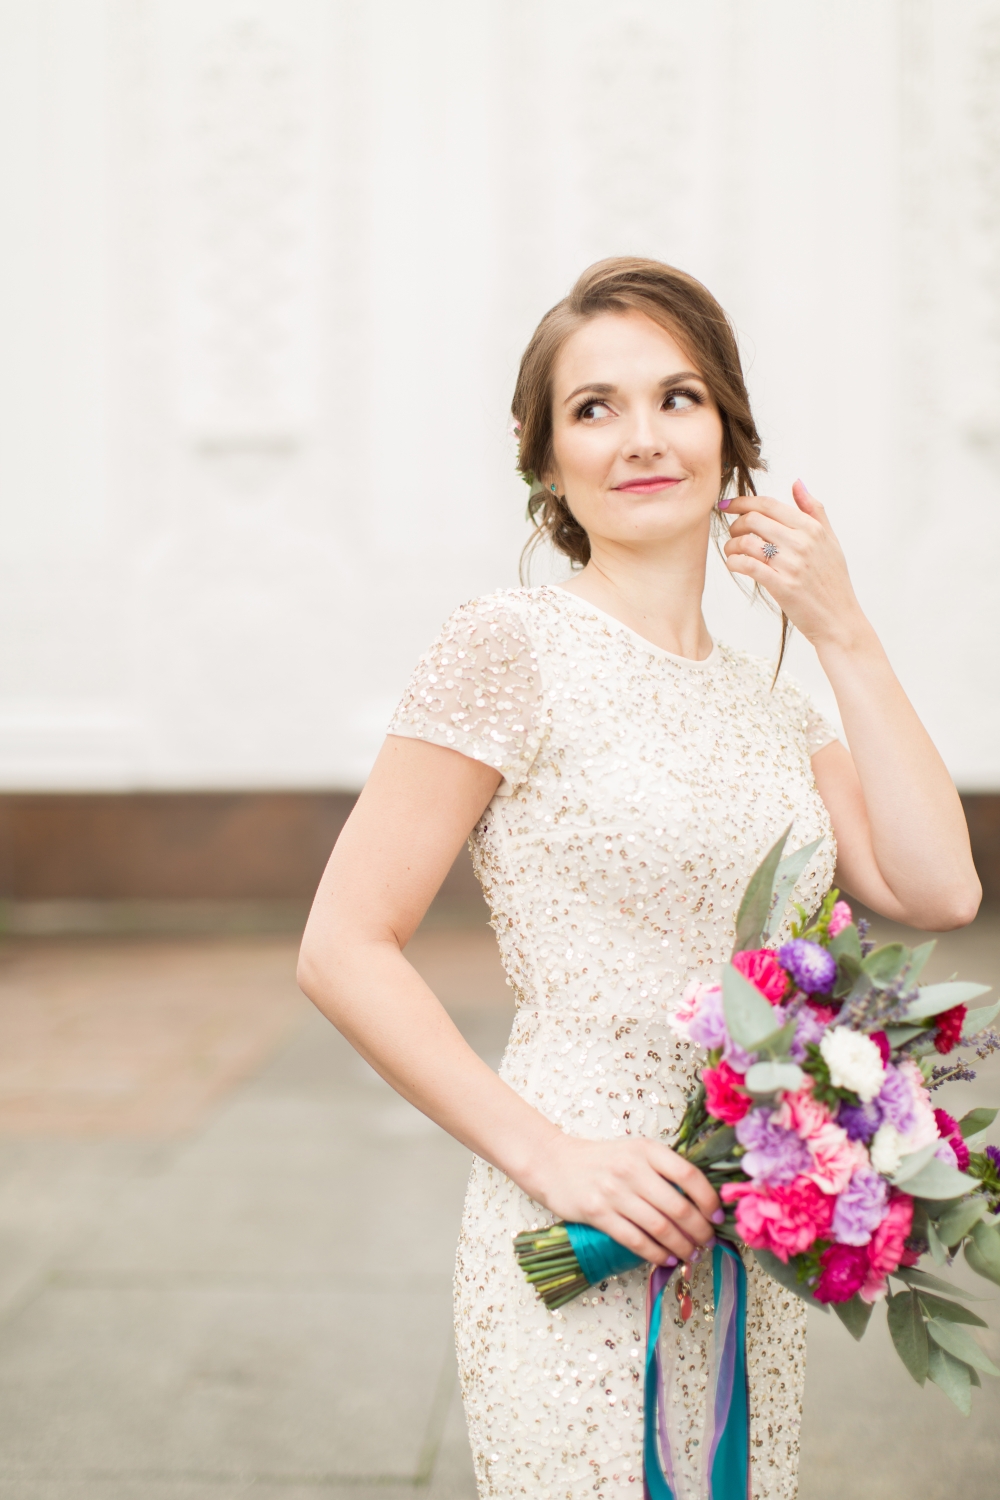 Смелый образ невесты Юли. Платье в пайетках и яркий букет из нетипичных для свадьбы цветов — гвоздик